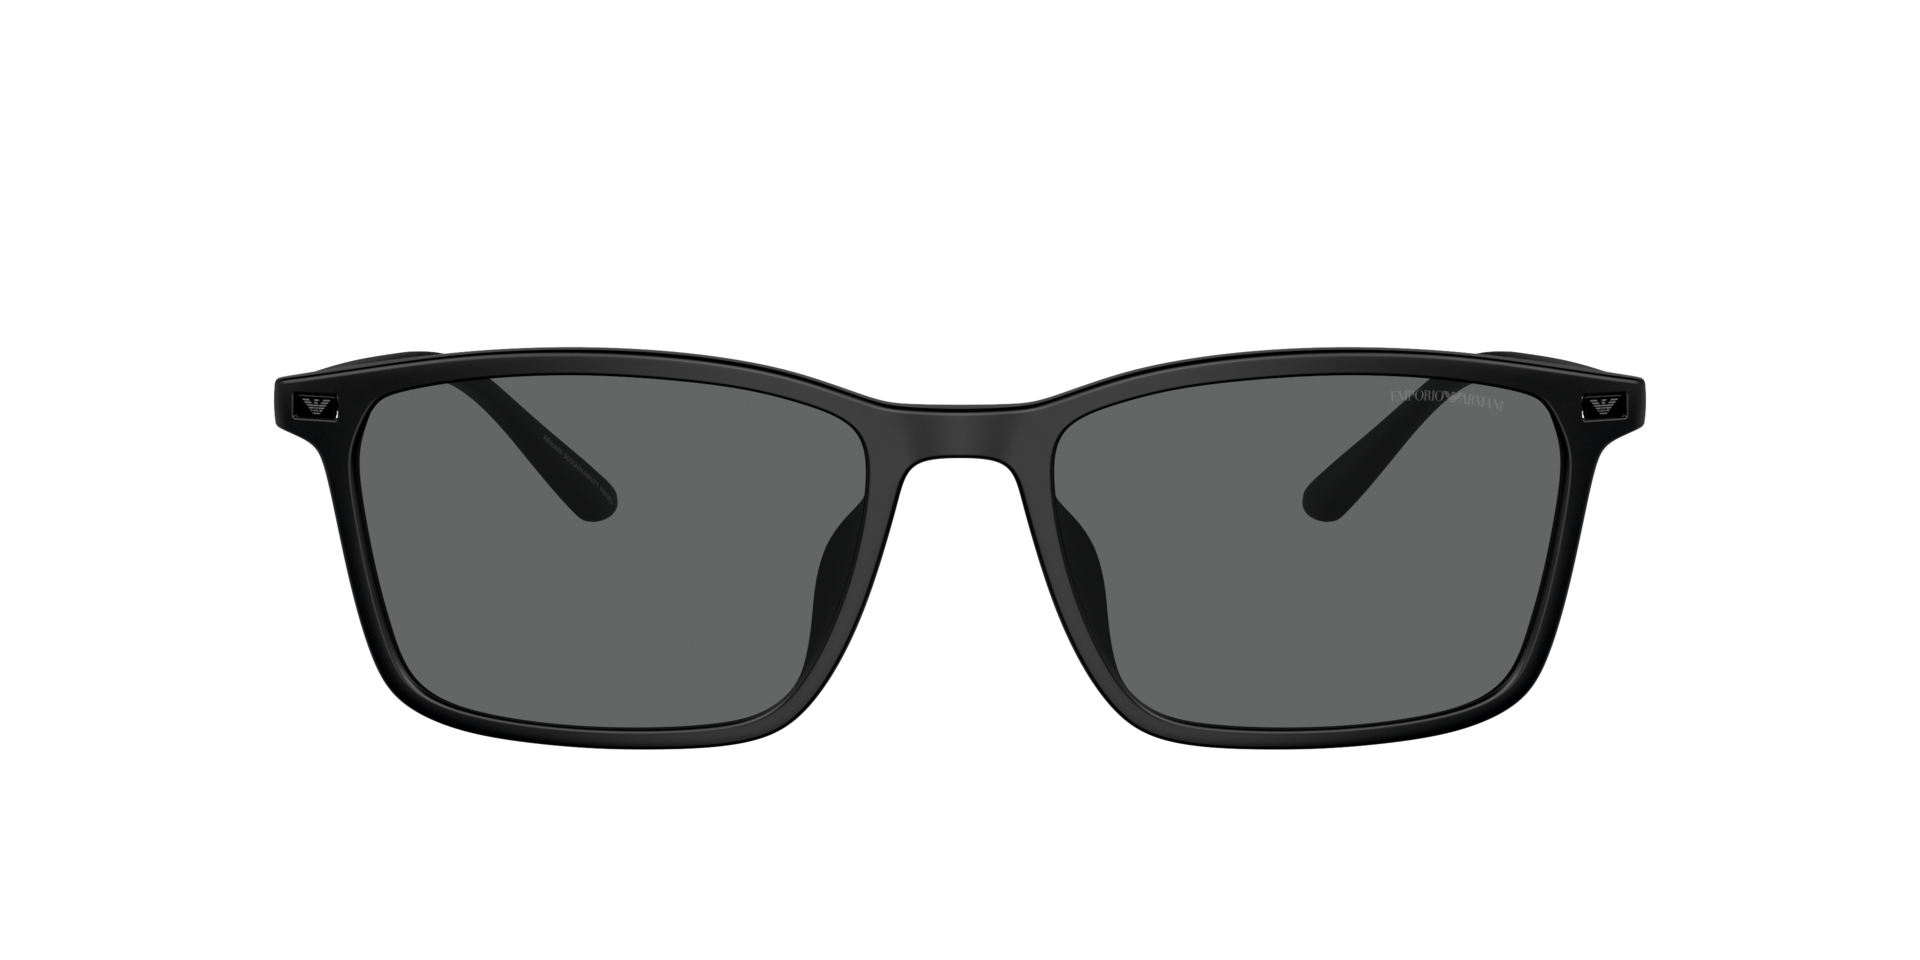 Das Bild zeigt die Sonnenbrille EA4223 500187 von der Marke Emporio Armani in schwarz.